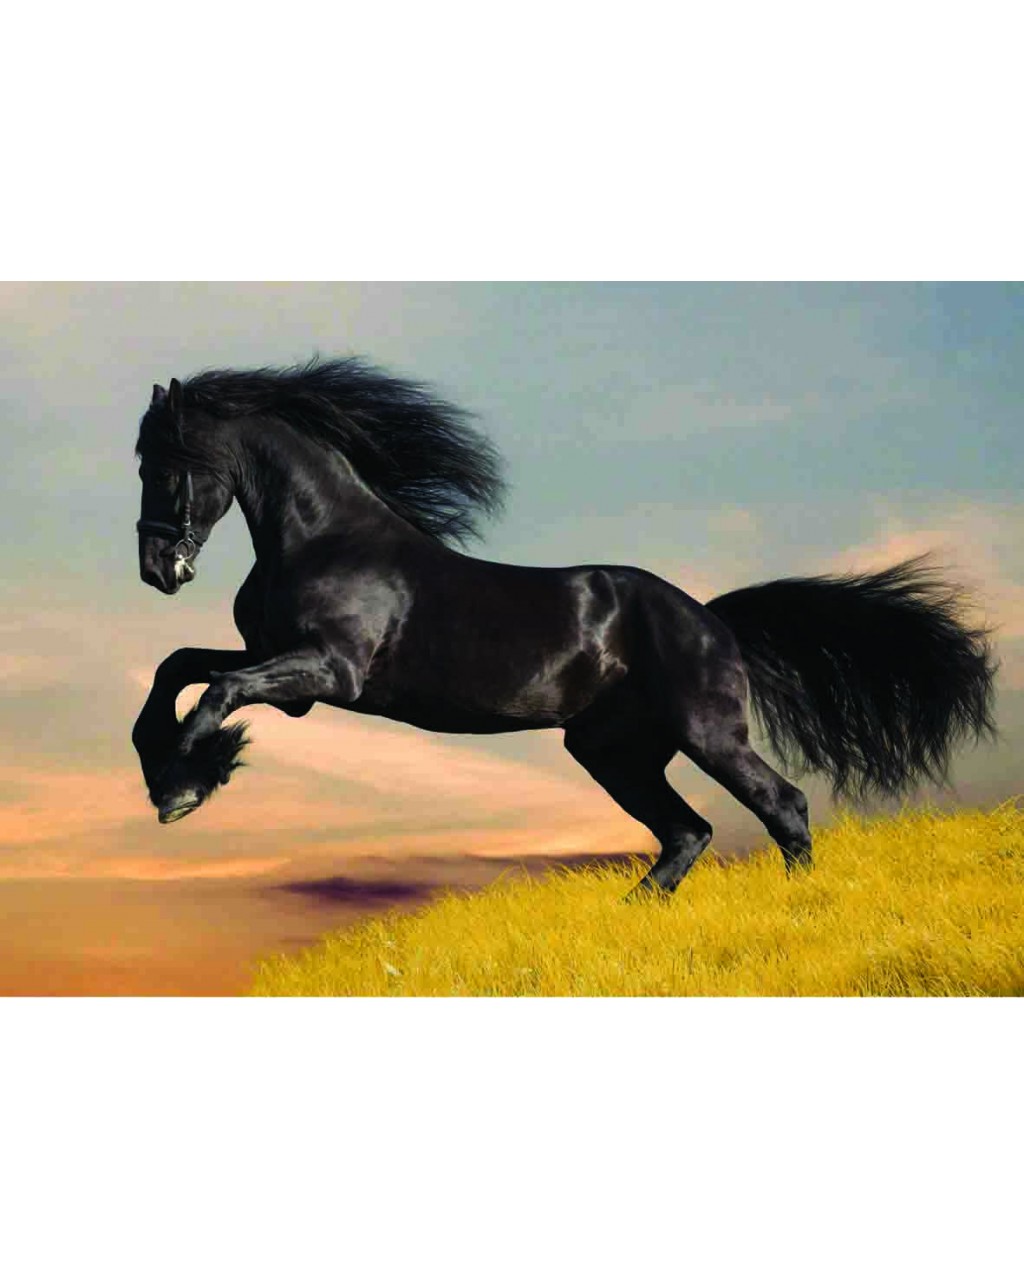 SİYAH AT (BLACK HORSE)